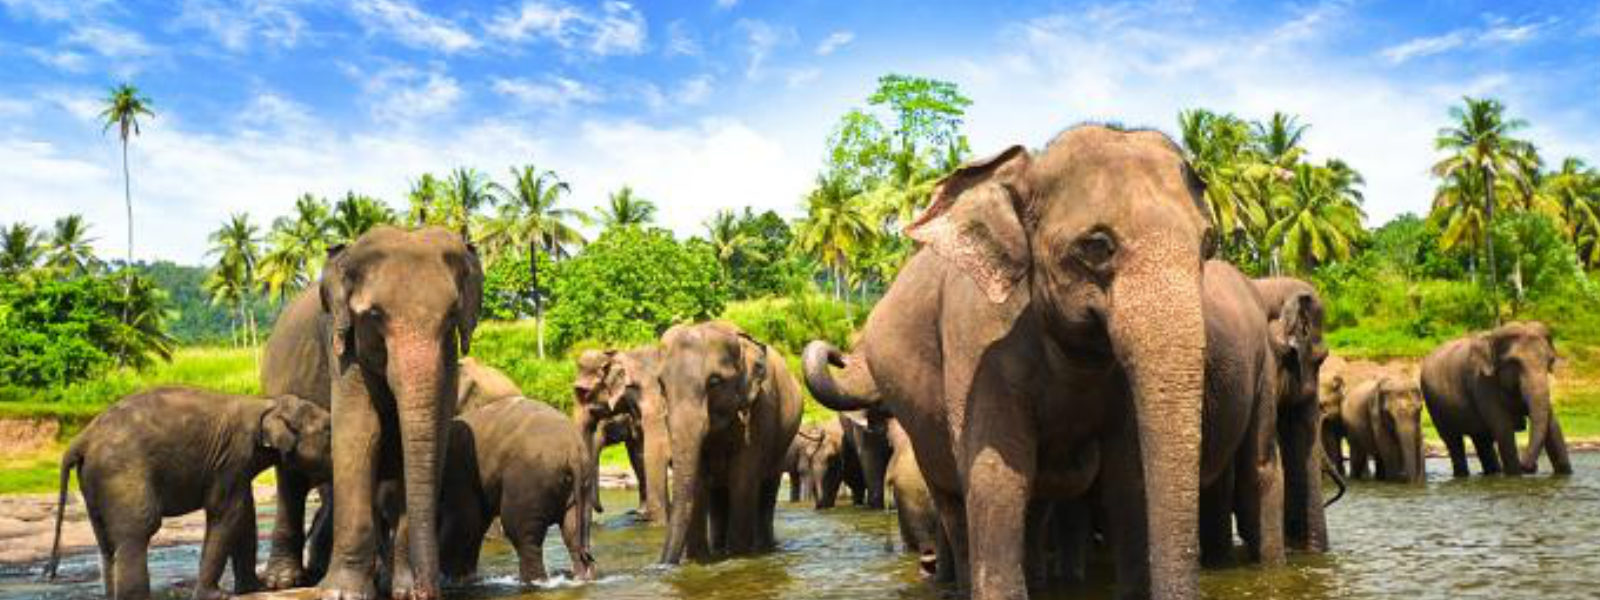 Elephant shot at Somawathiya reserve